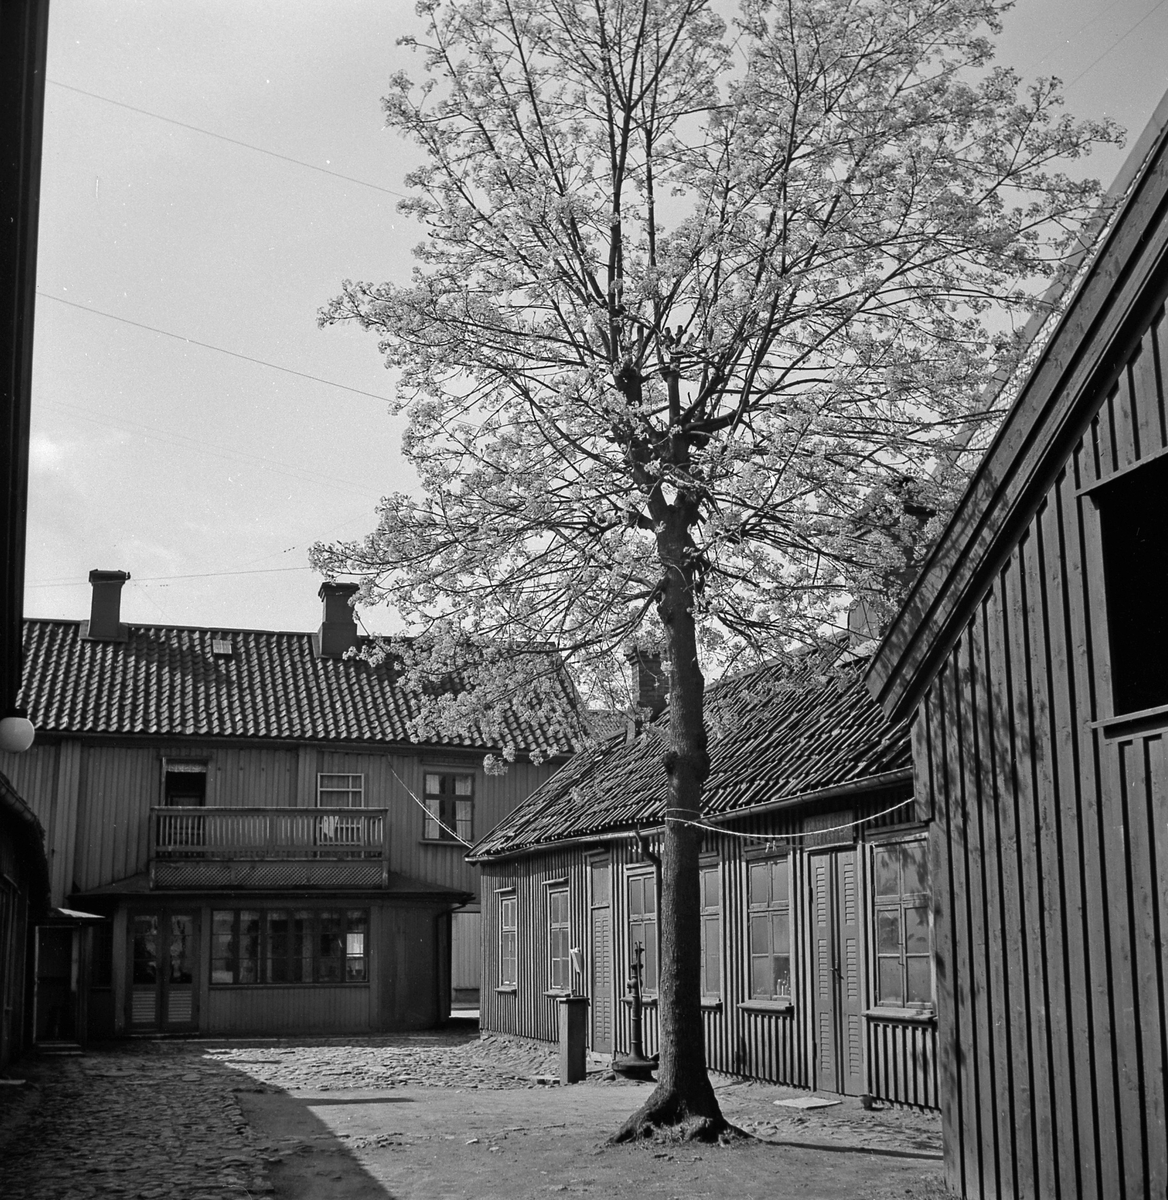 Gården i kv Hjorten 8, Norra Strömgatan. Den så kallade Kopparslagaregården. Uthus och vattenpump samt ett träd i vårblom syns.